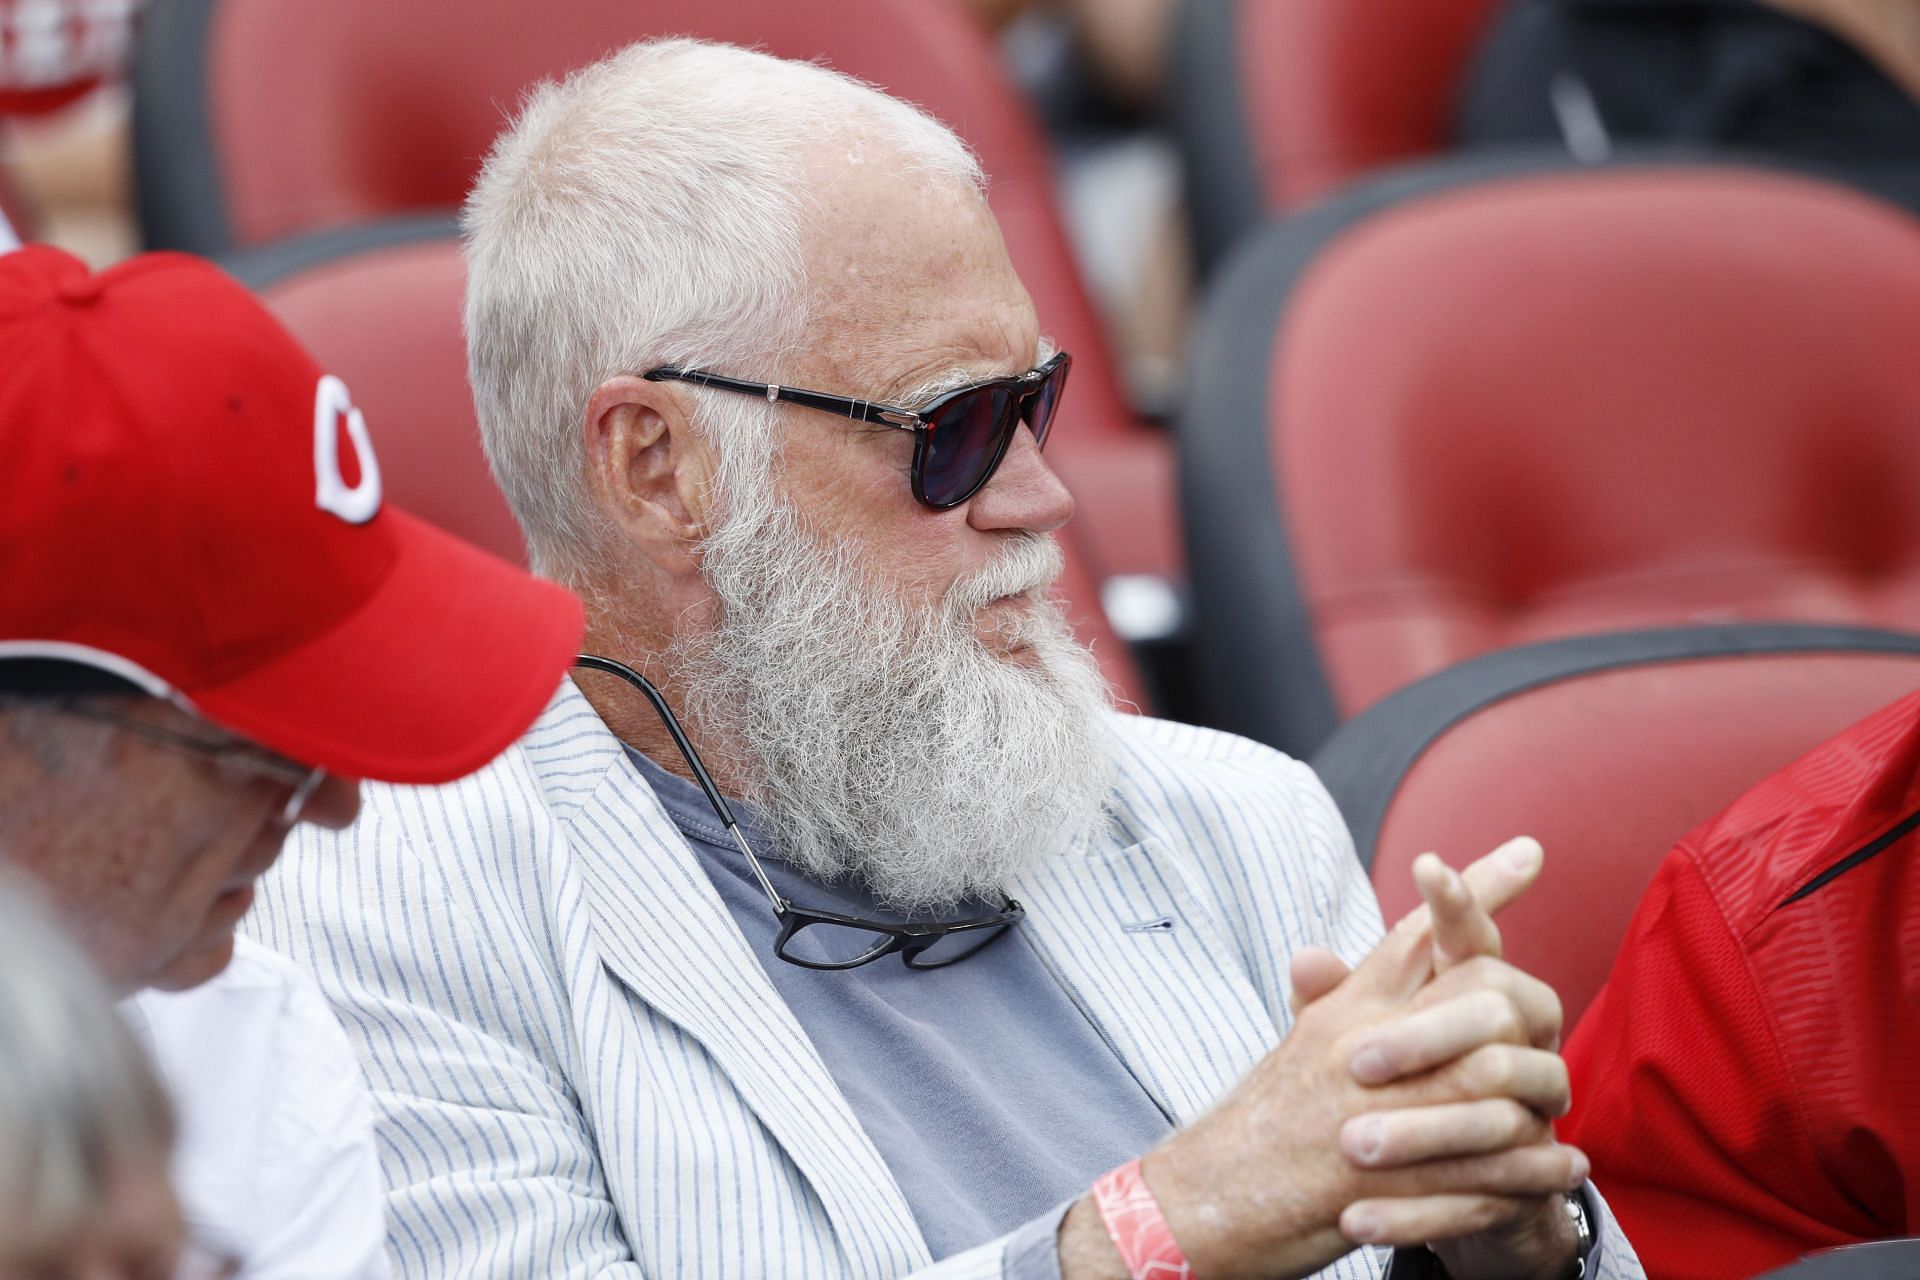 David Letterman seen at a Cincinnati Reds game in 2017 (Photo: Getty)